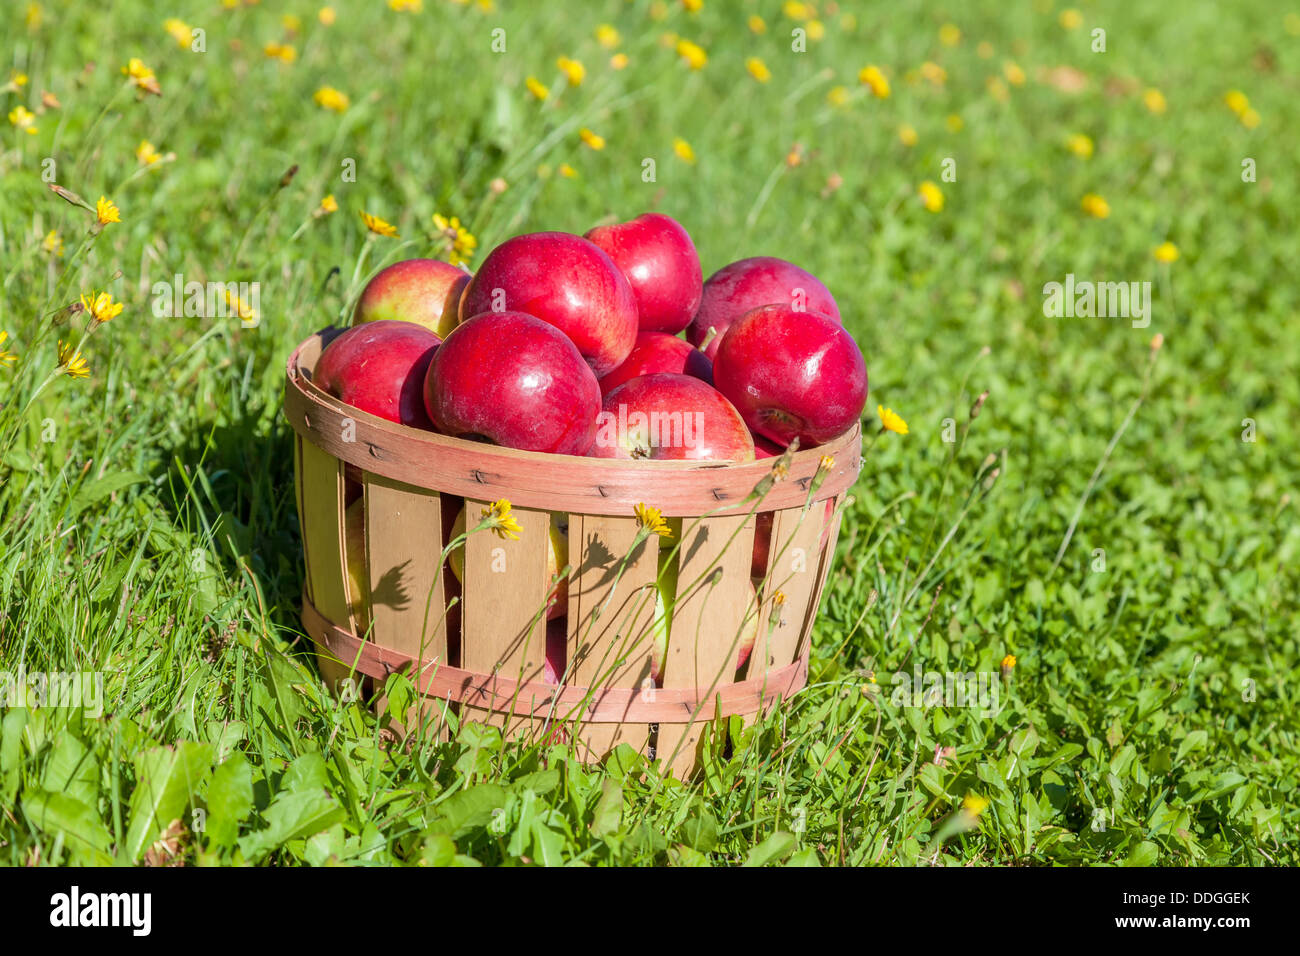 https://c8.alamy.com/comp/DDGGEK/freshly-picked-apples-in-a-half-bushel-basket-DDGGEK.jpg